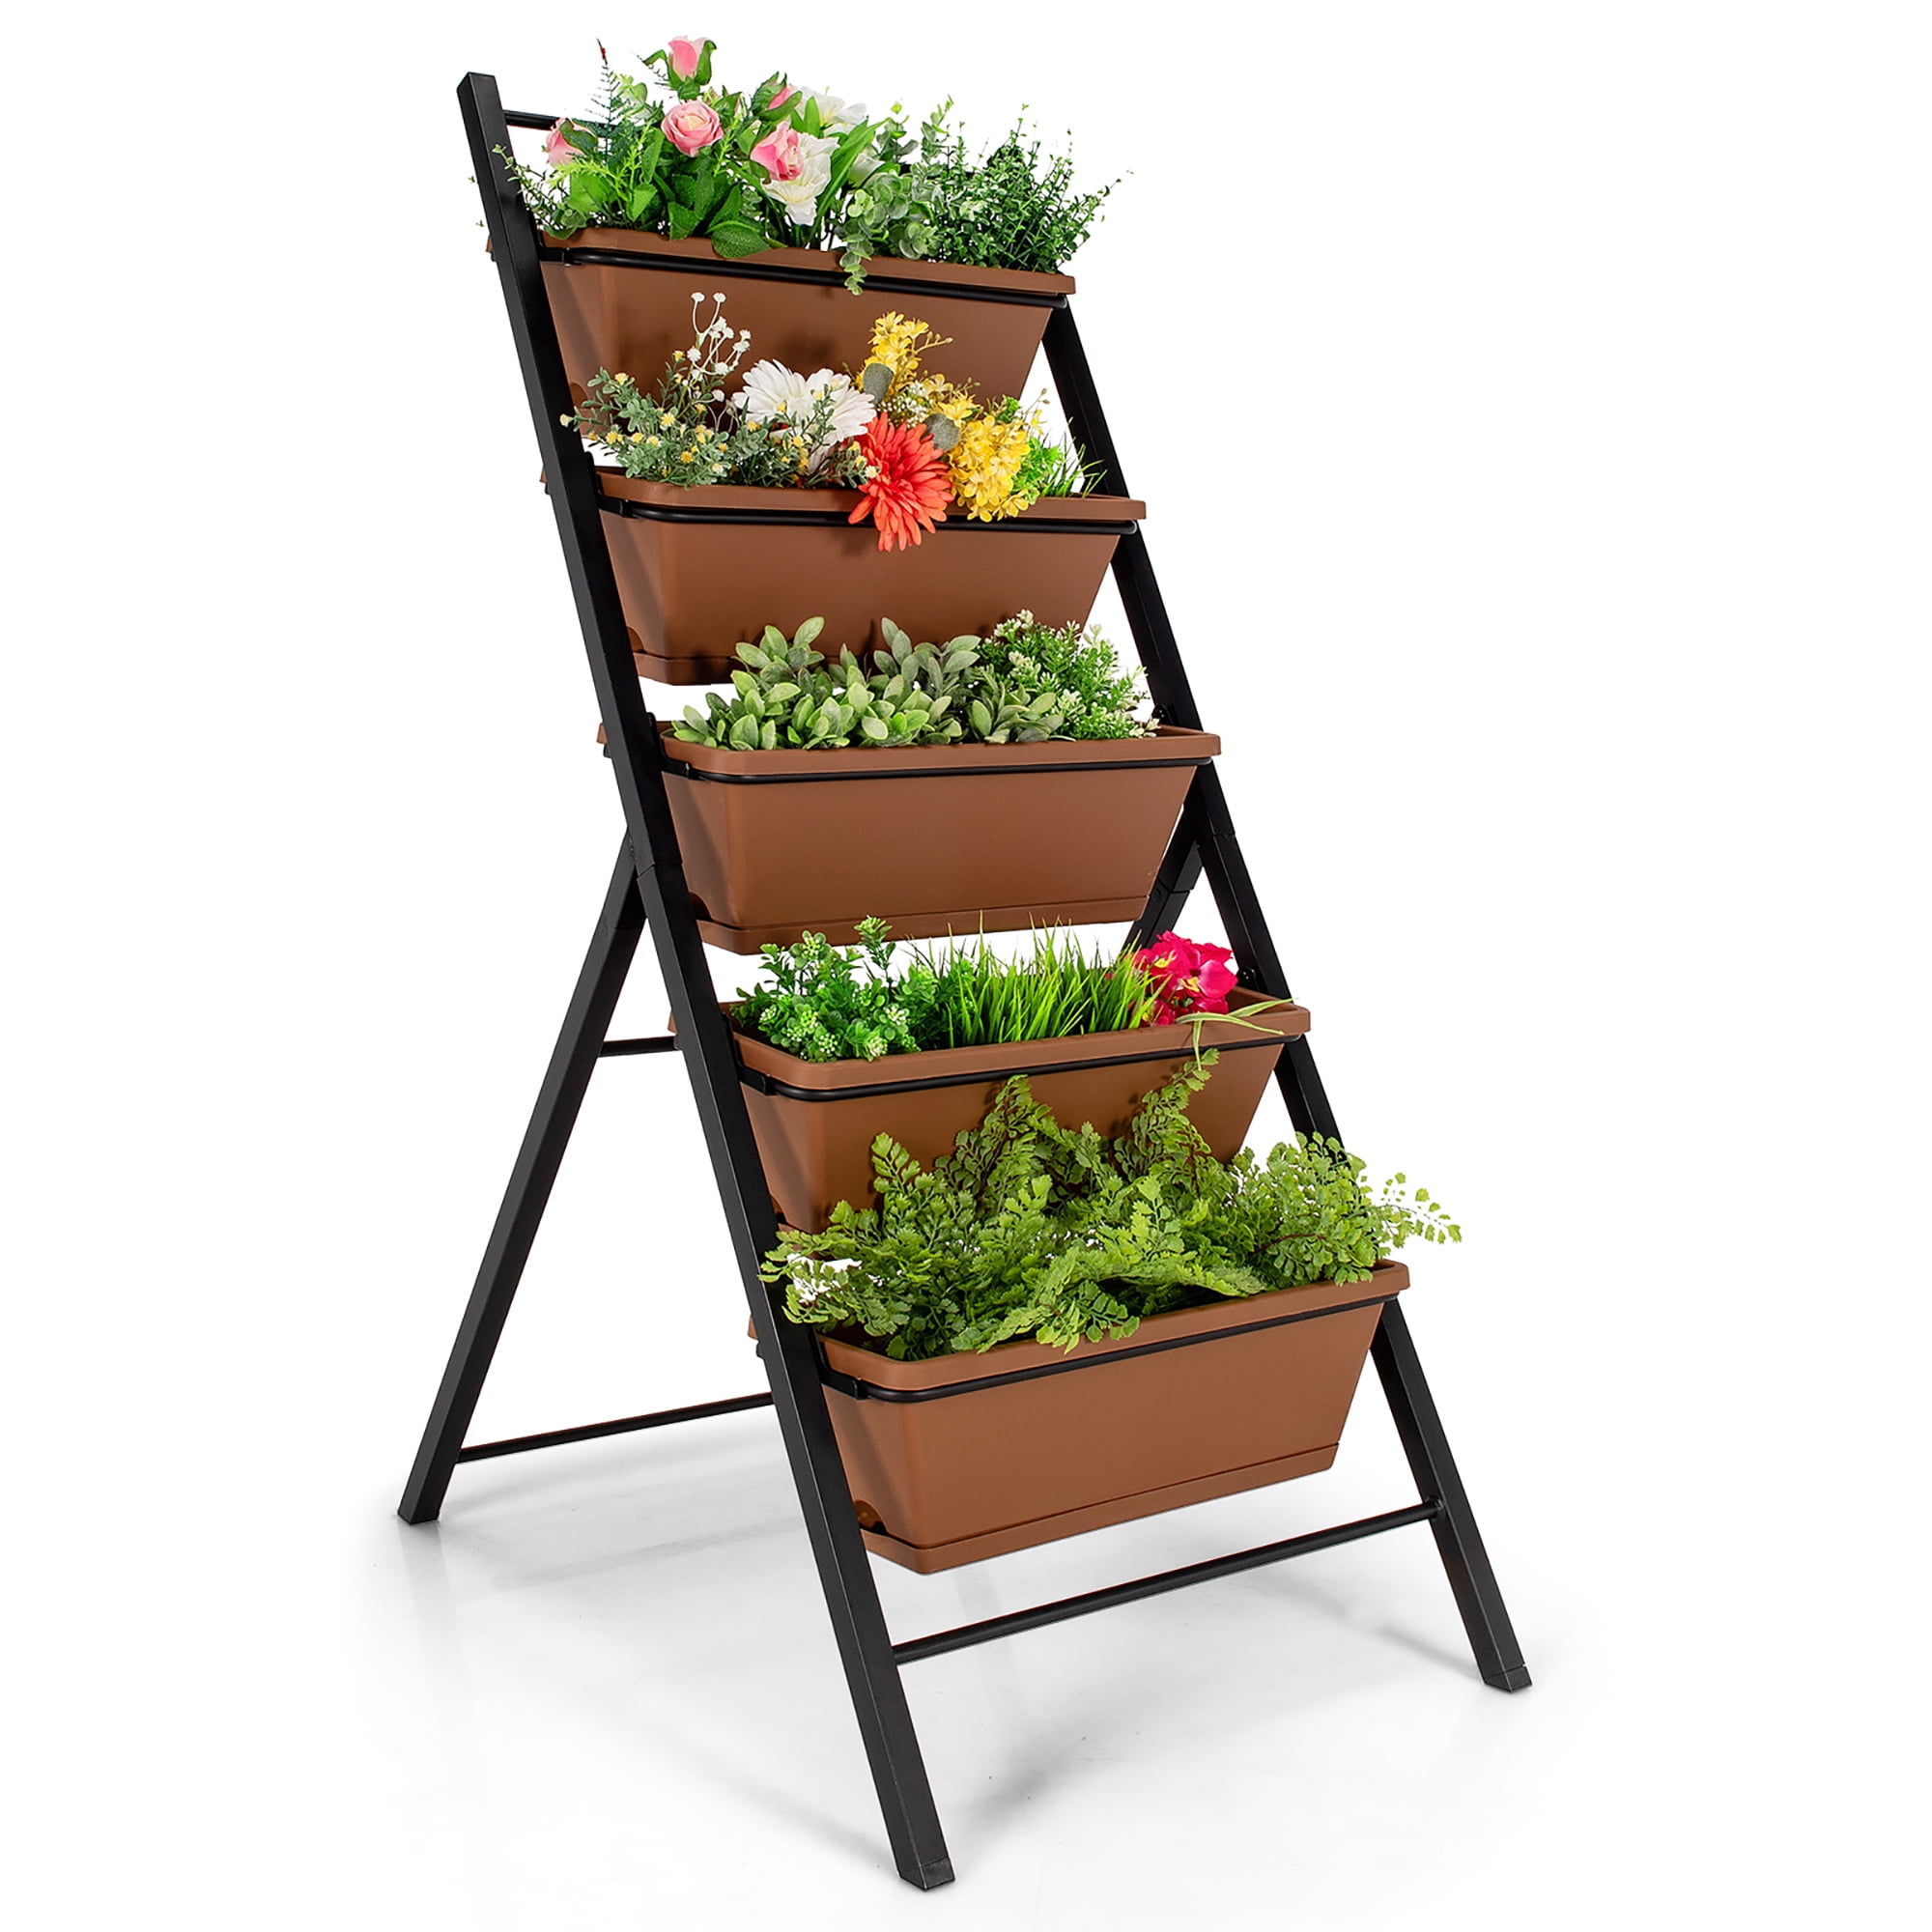 XT Vertical Garden Planter Vertical Raised Garden Bed 5 Tier Planter Box for Flower Vegetables Outdoor Indoor 